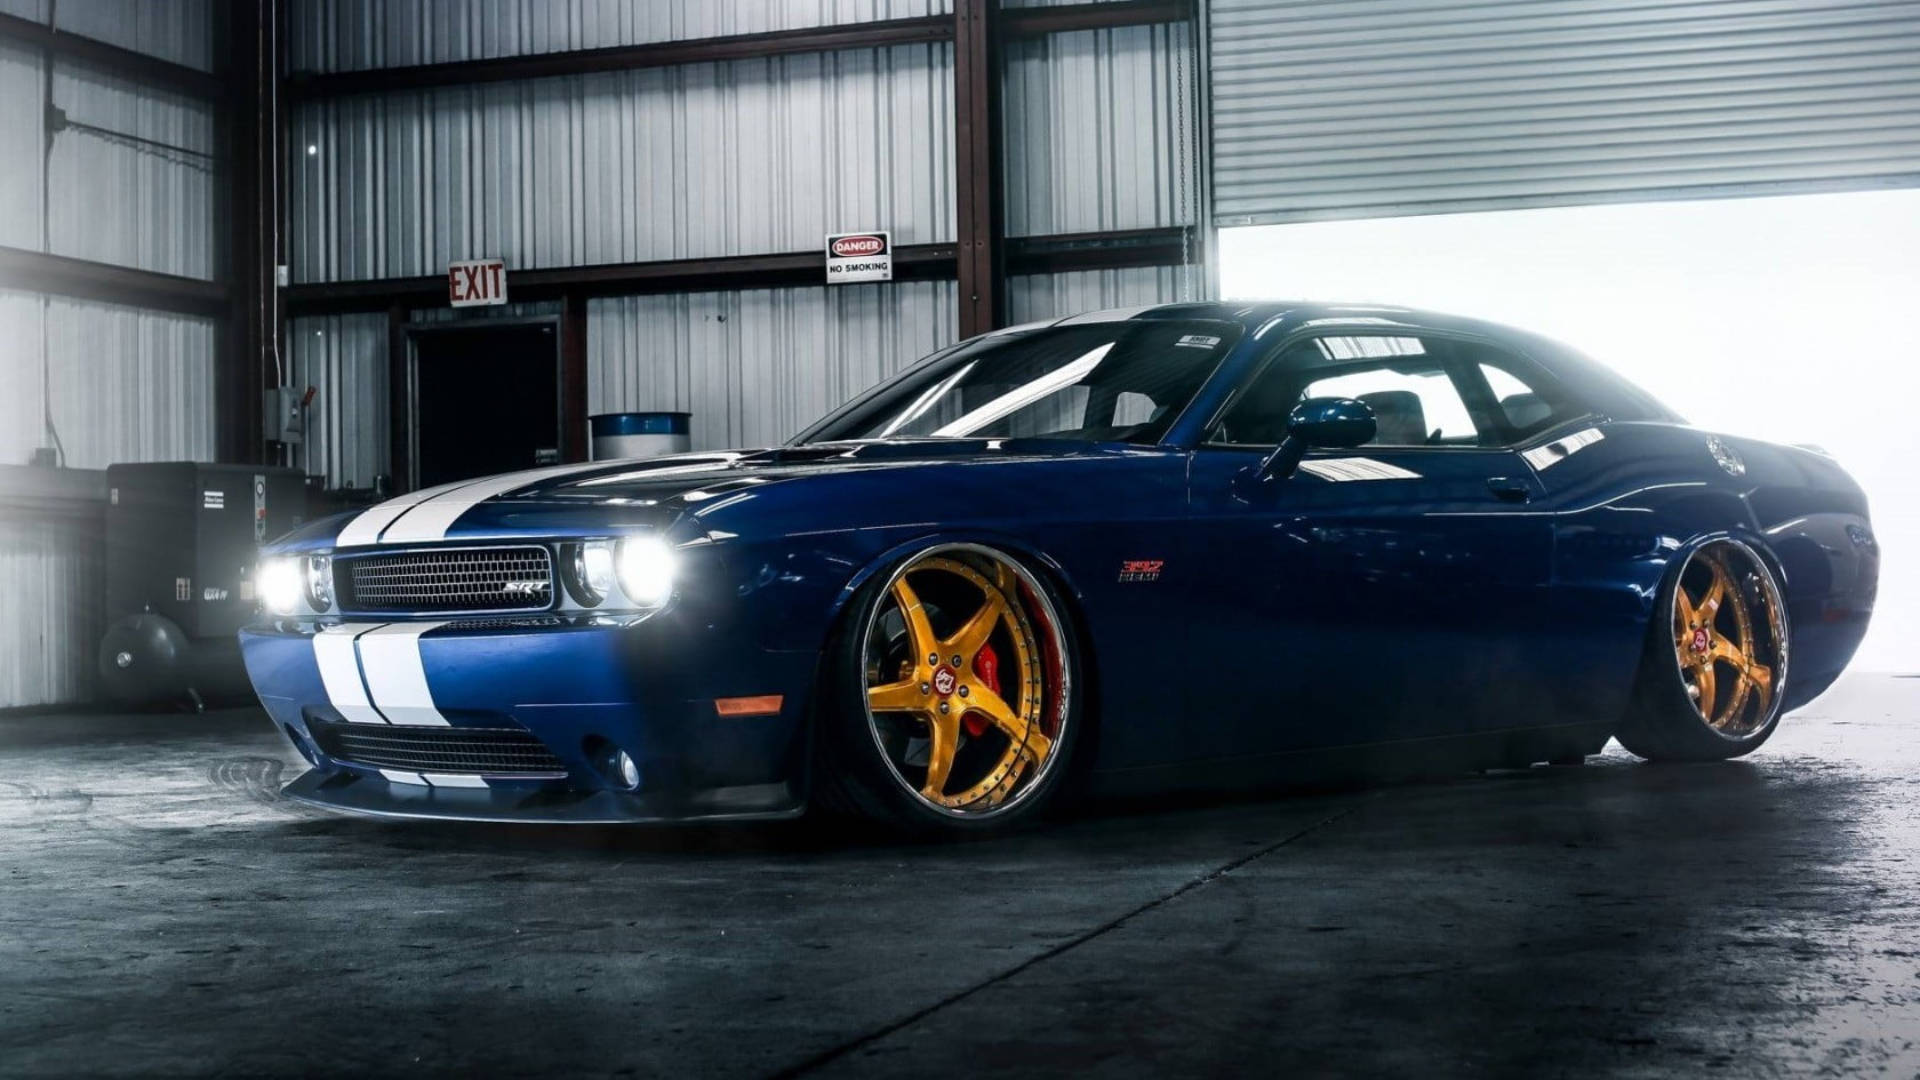 Caption: Stunning Blue Dodge Challenger Parked in Garage Wallpaper